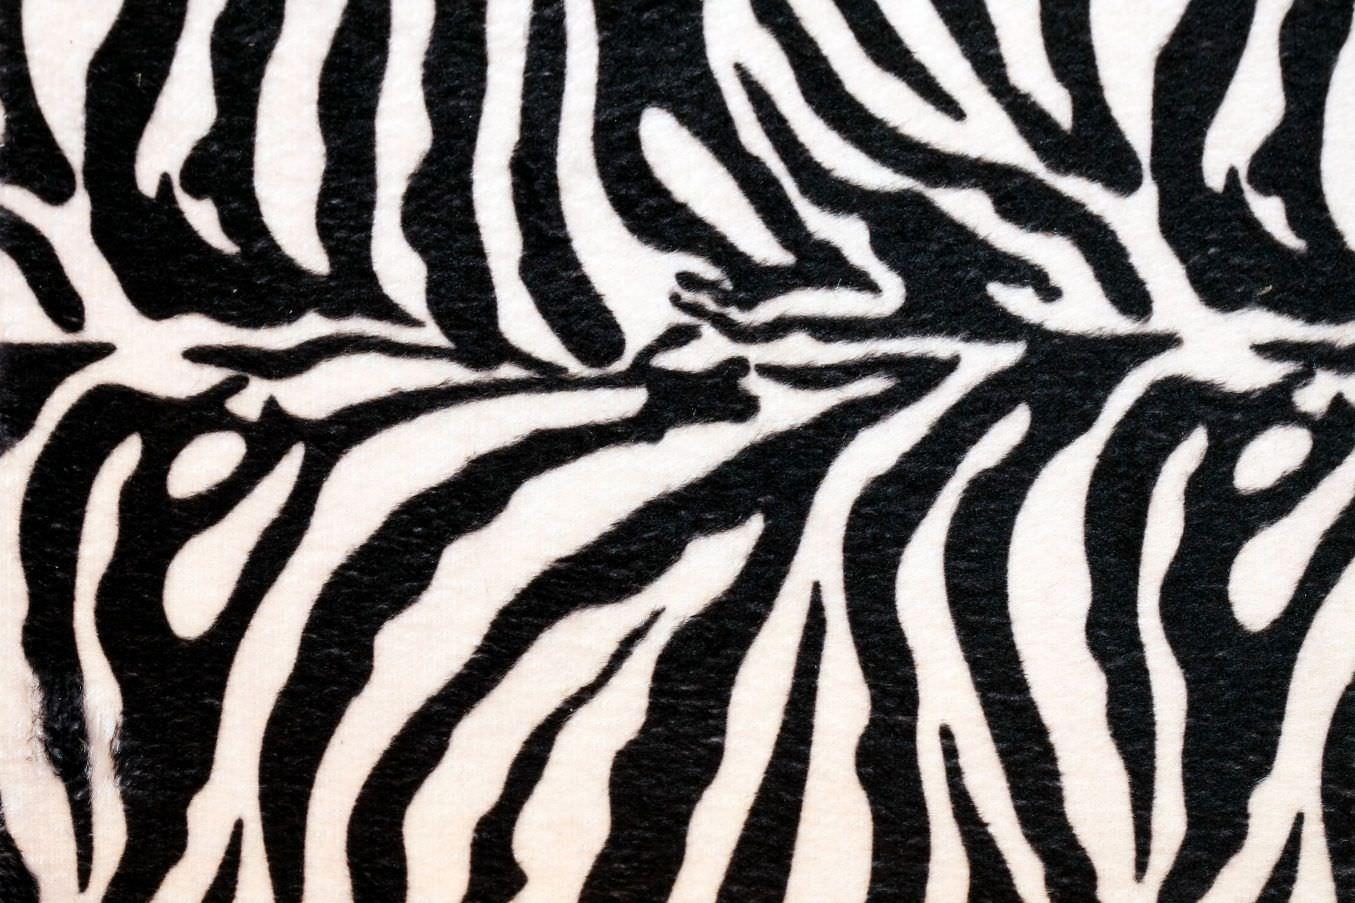 Astonishing Risultato Della Ricerca Immagini Di Per For Zebra